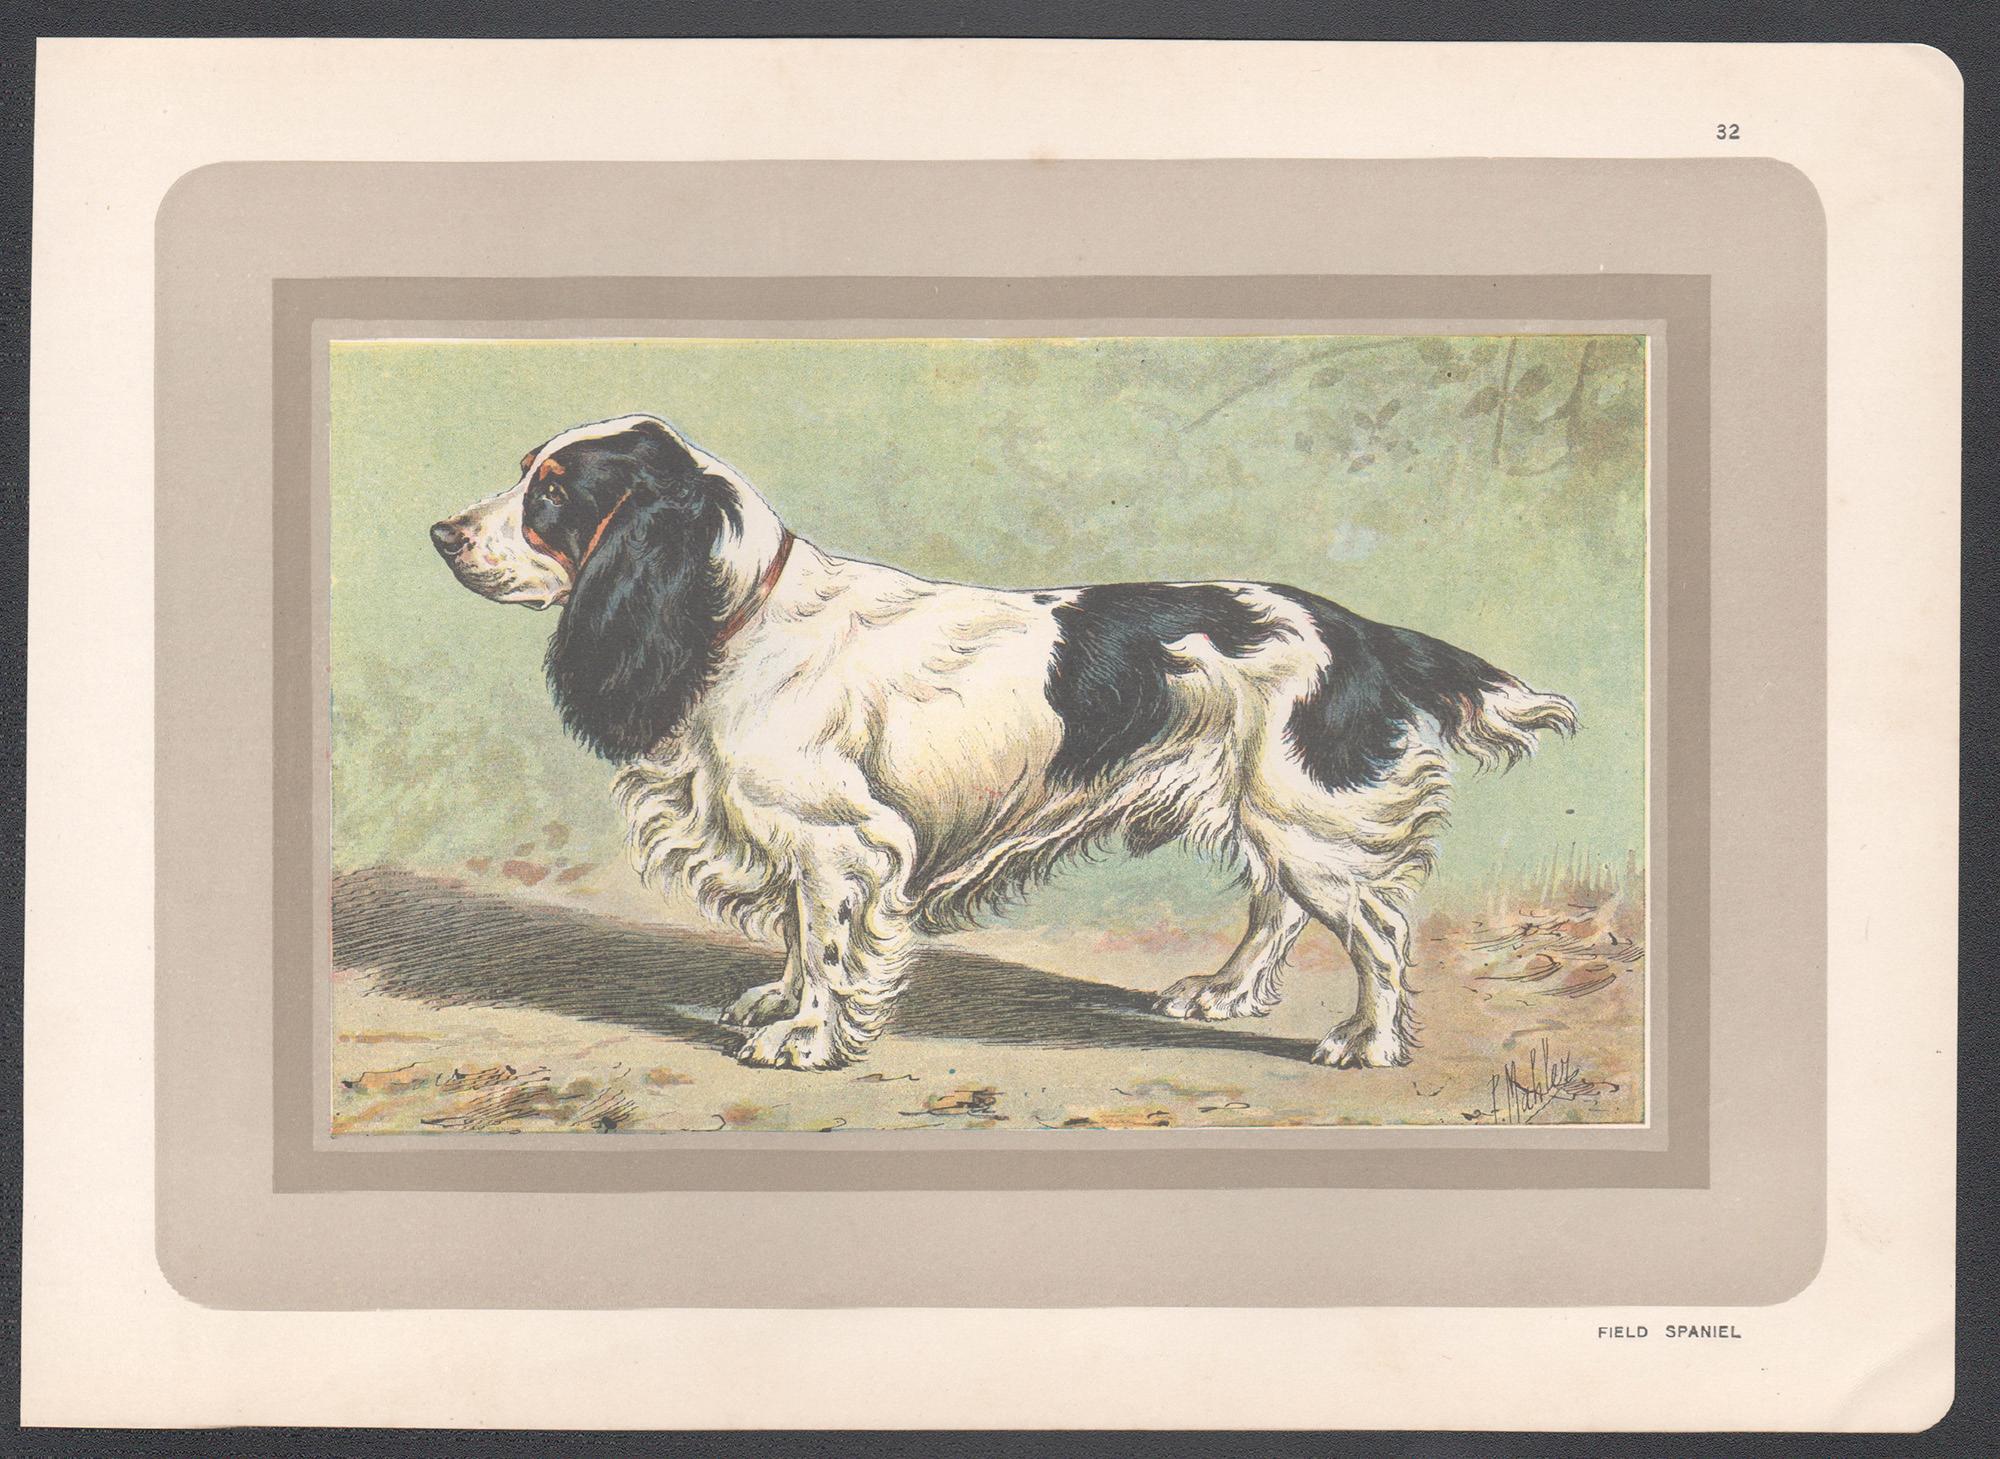 Field Spaniel, Französischer Chromolithographiedruck mit Hund, 1930er-Jahre – Print von P. Mahler